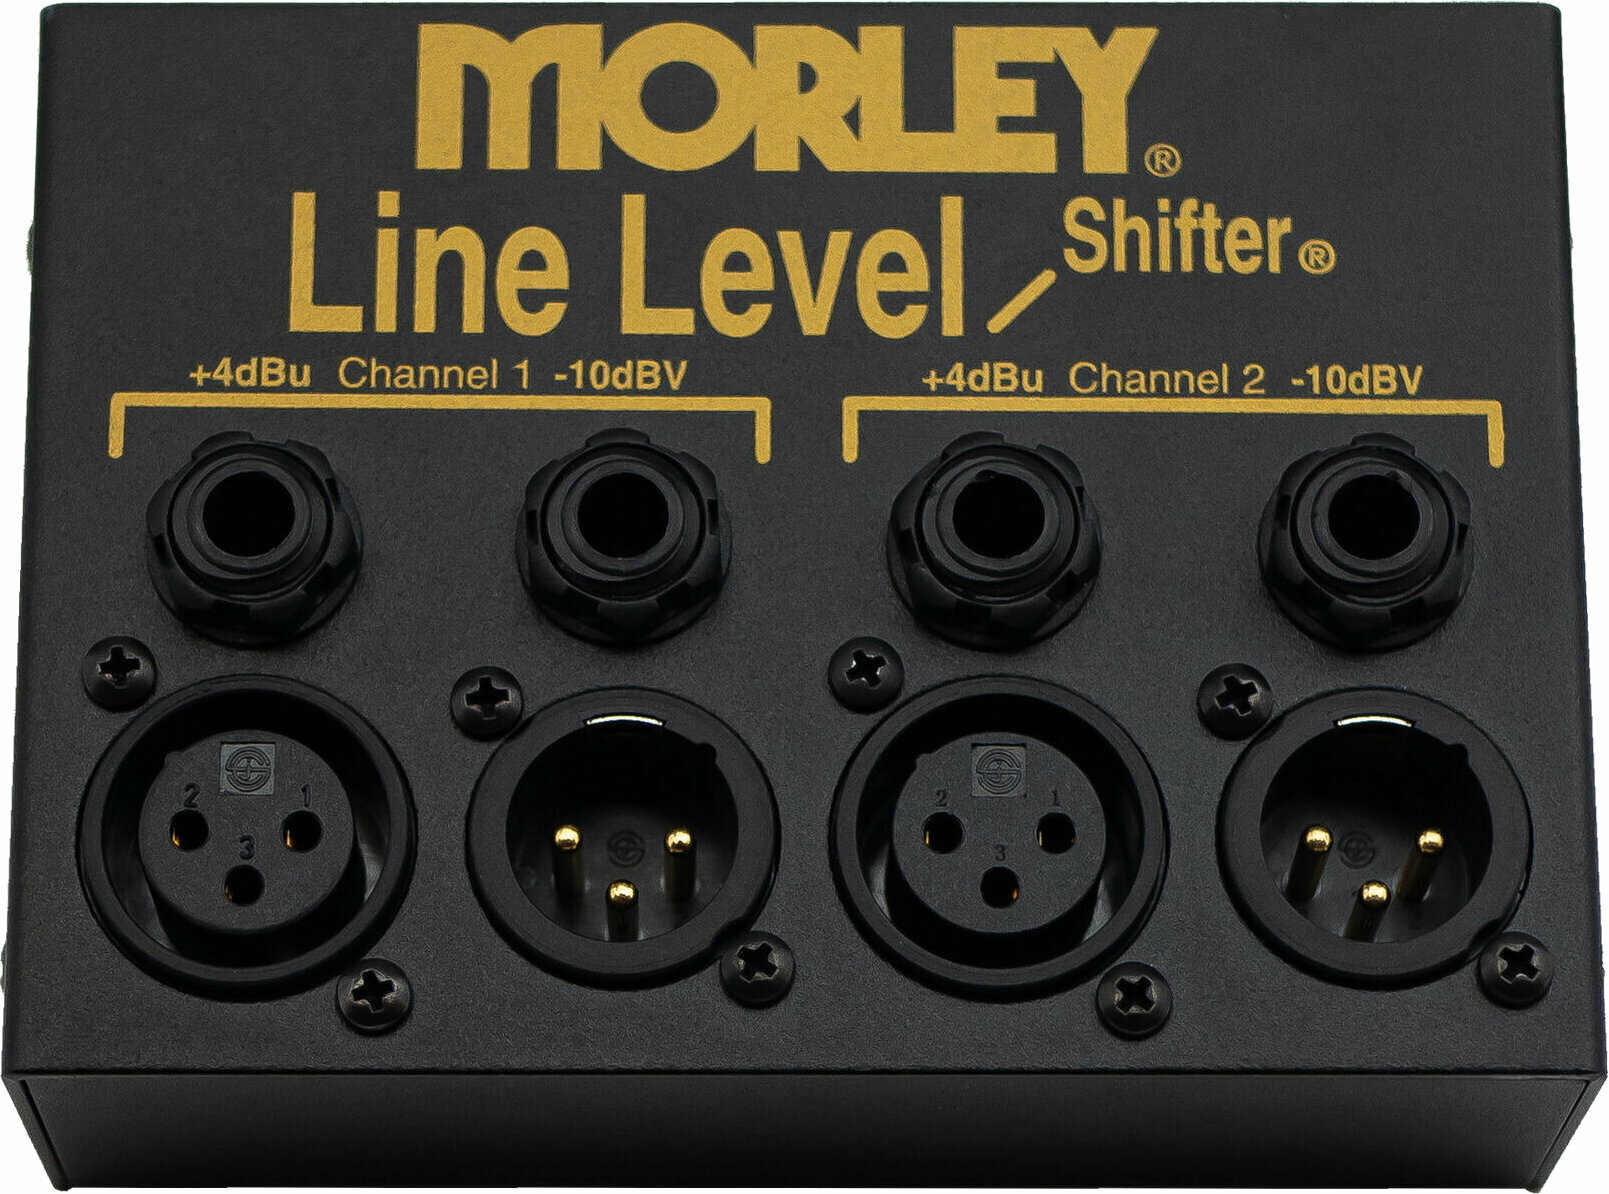 Morley Line Level Shifter Morley